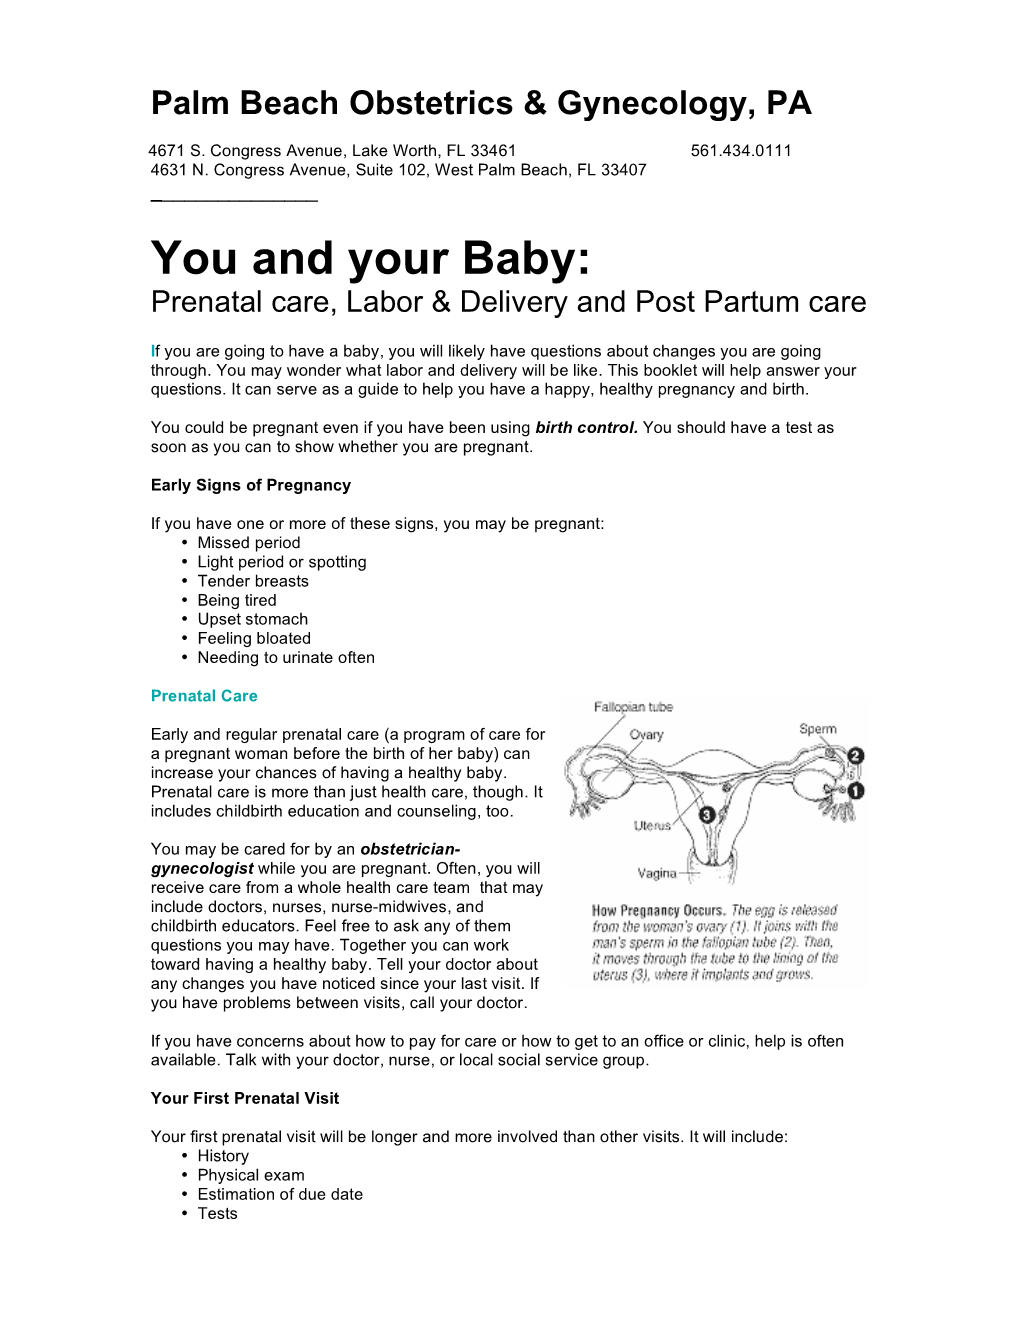 Prenatal Care, Labor & Delivery and Post Partum Care